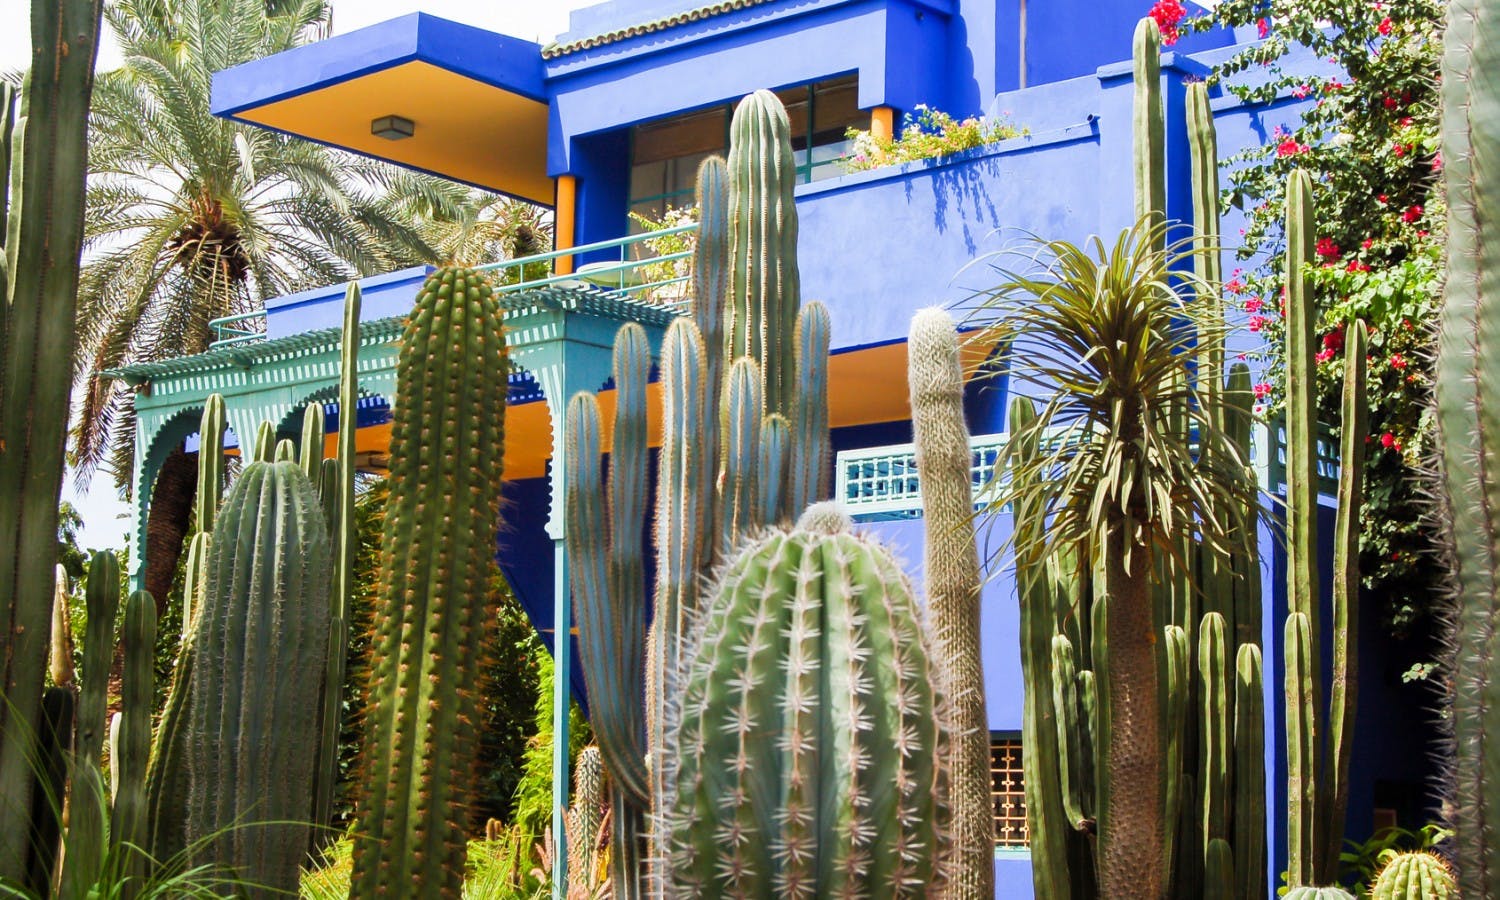 Cactus Majorelle Gardens in Marrakesh, Morocco.jpg